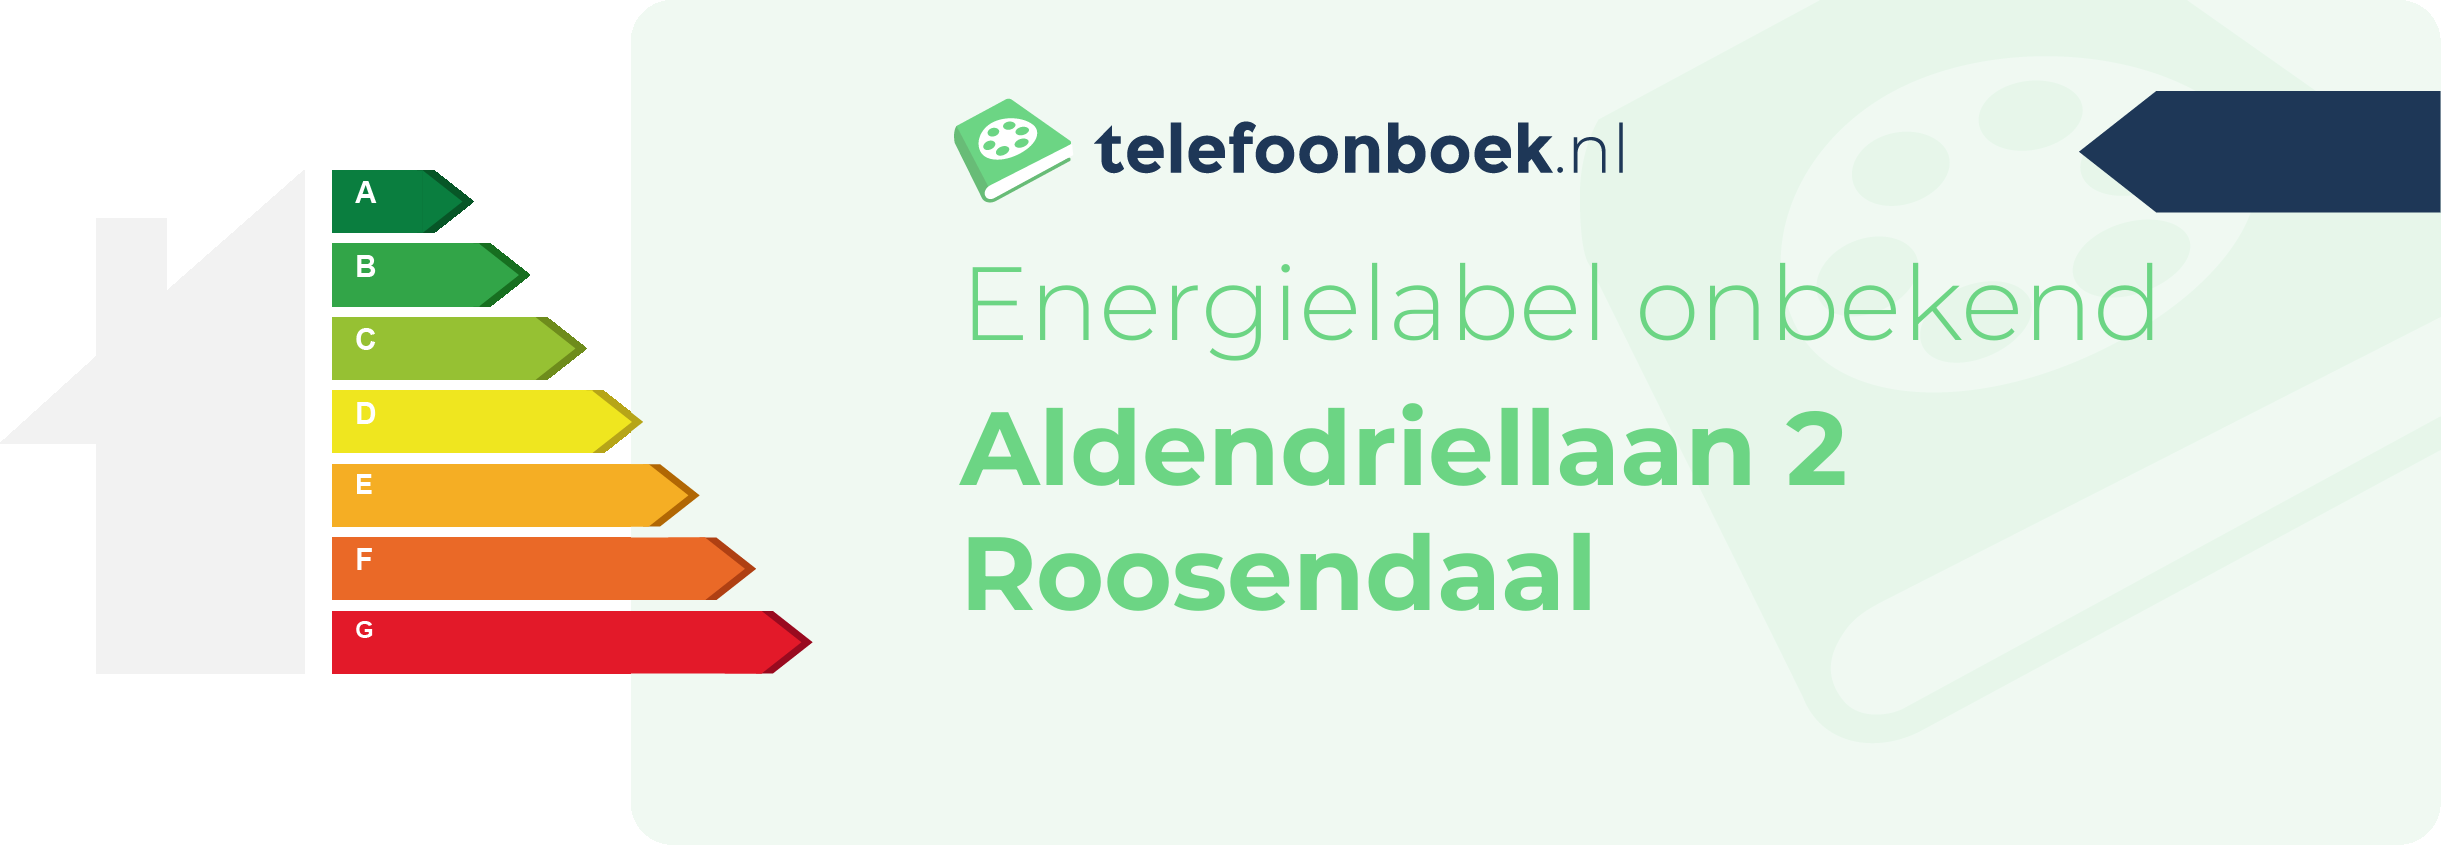 Energielabel Aldendriellaan 2 Roosendaal